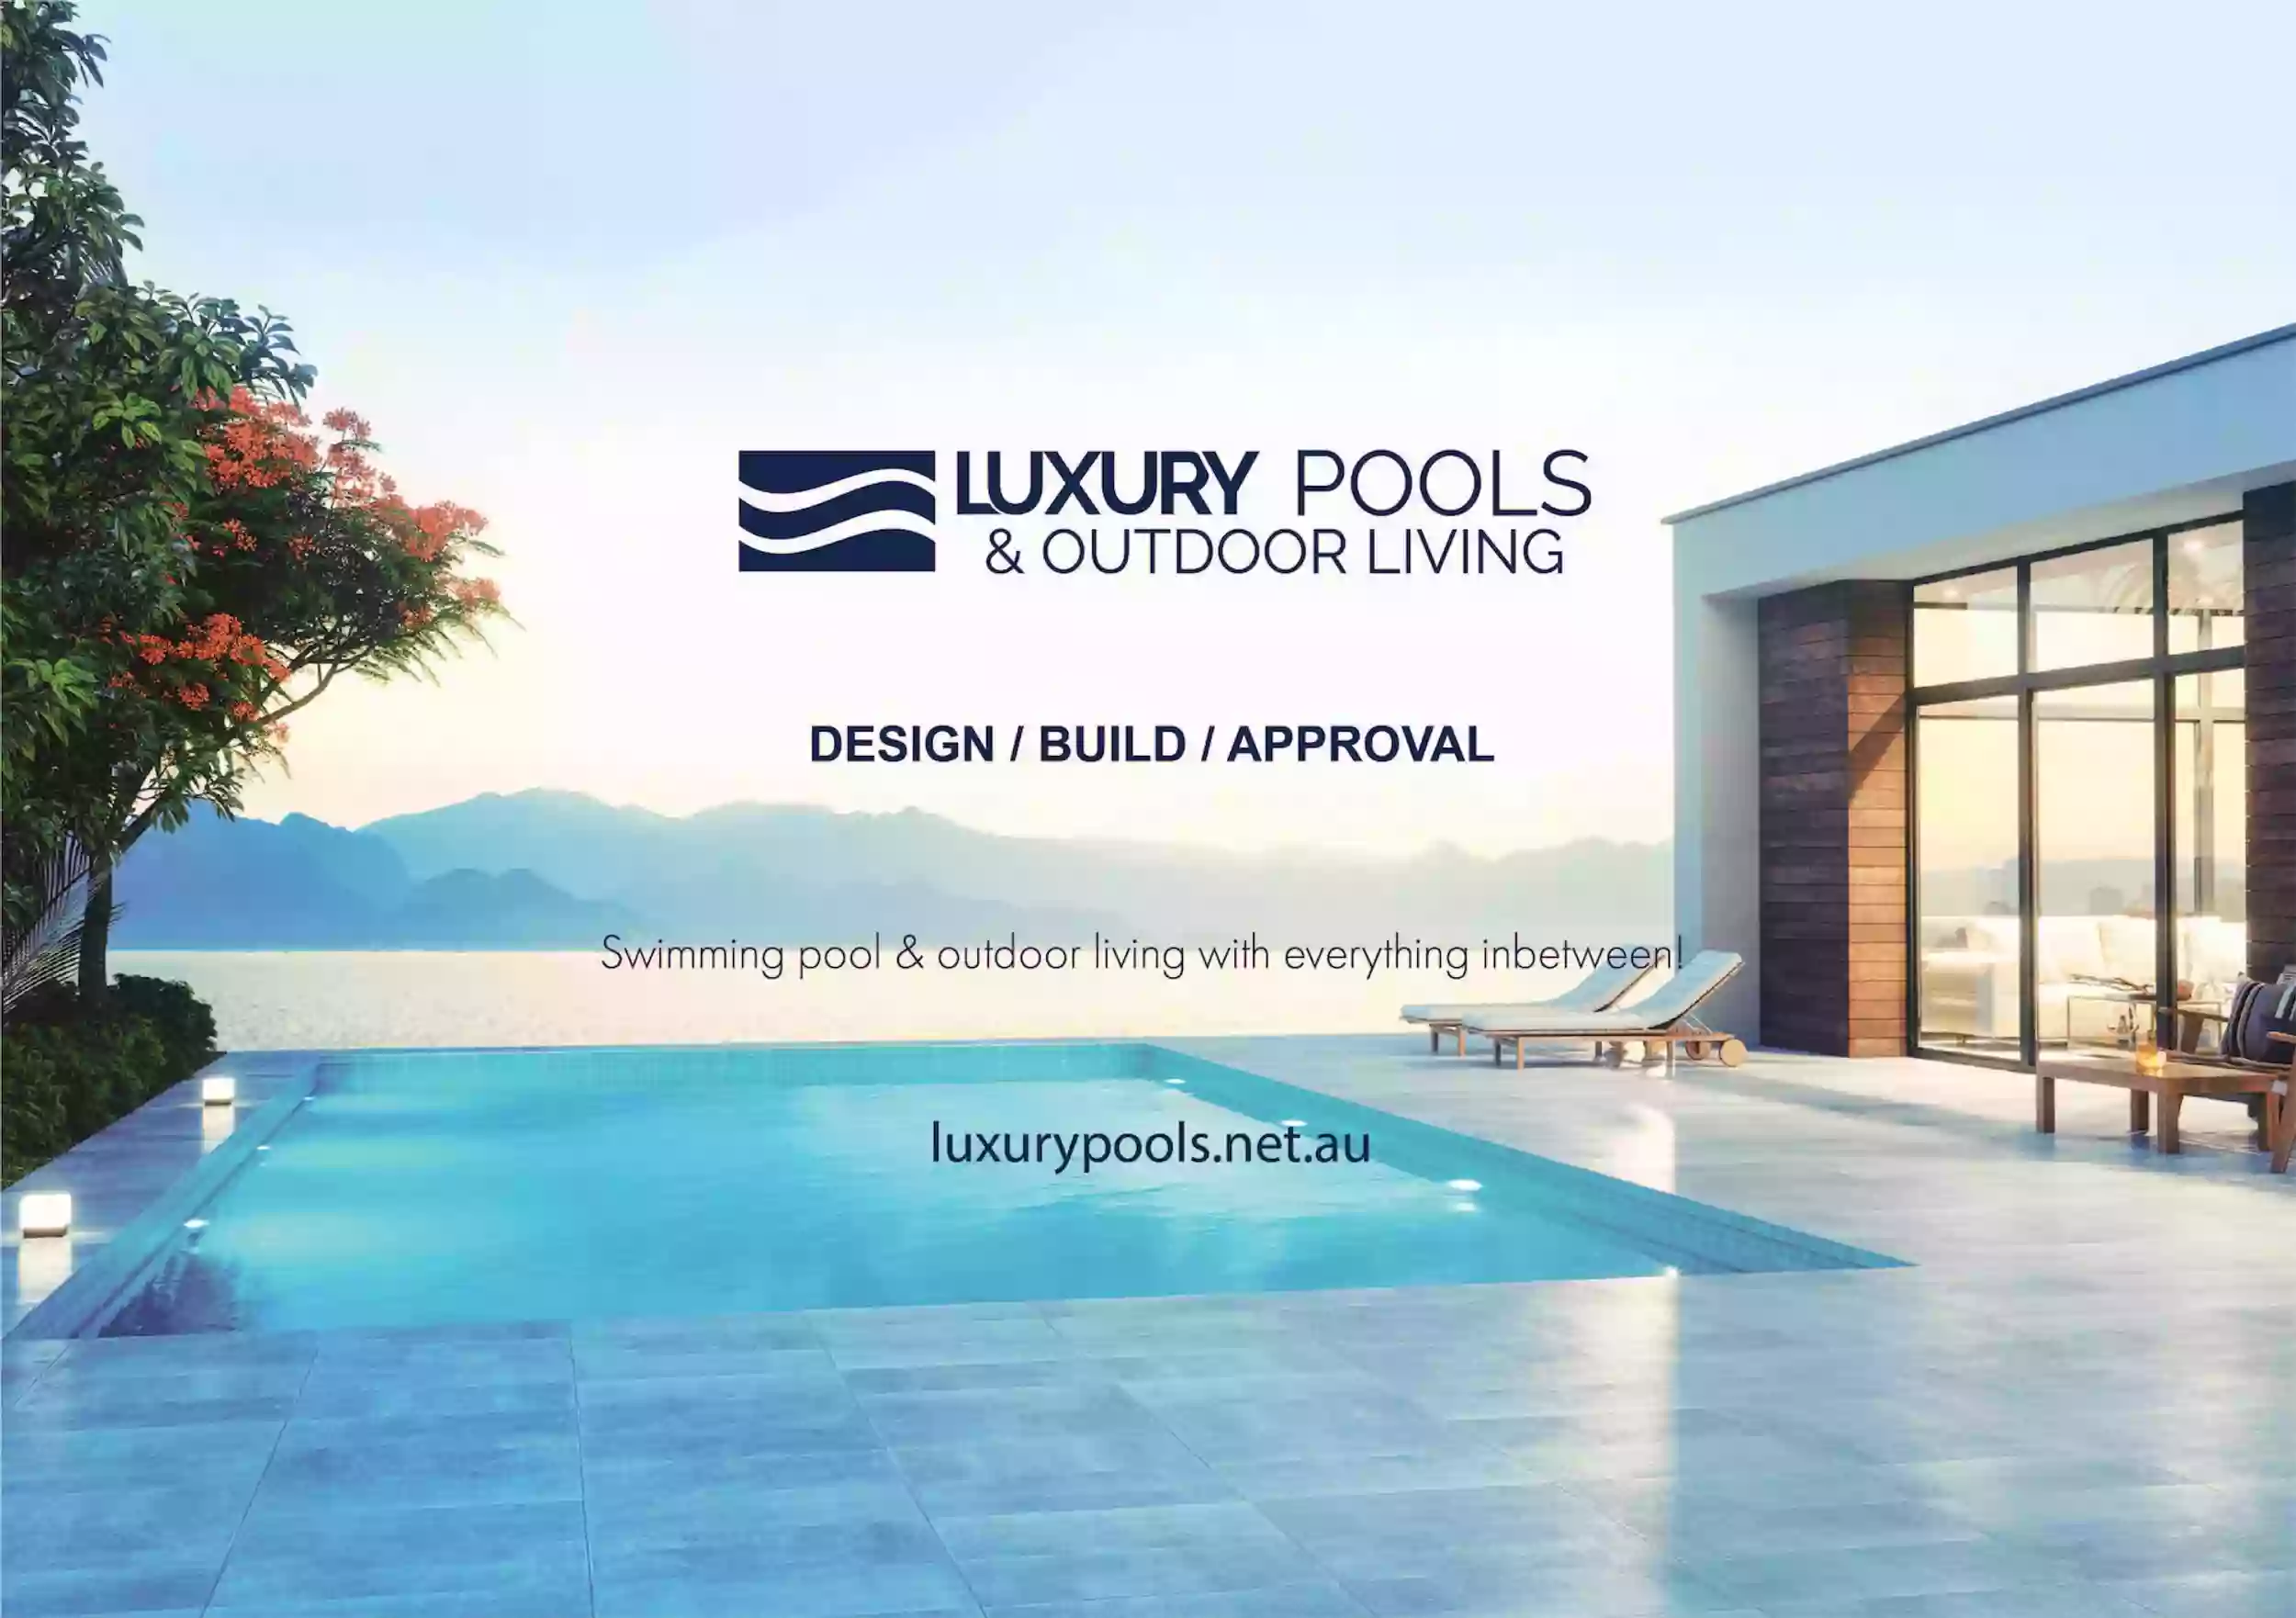 Luxury Pools & Outdoor Living Builder